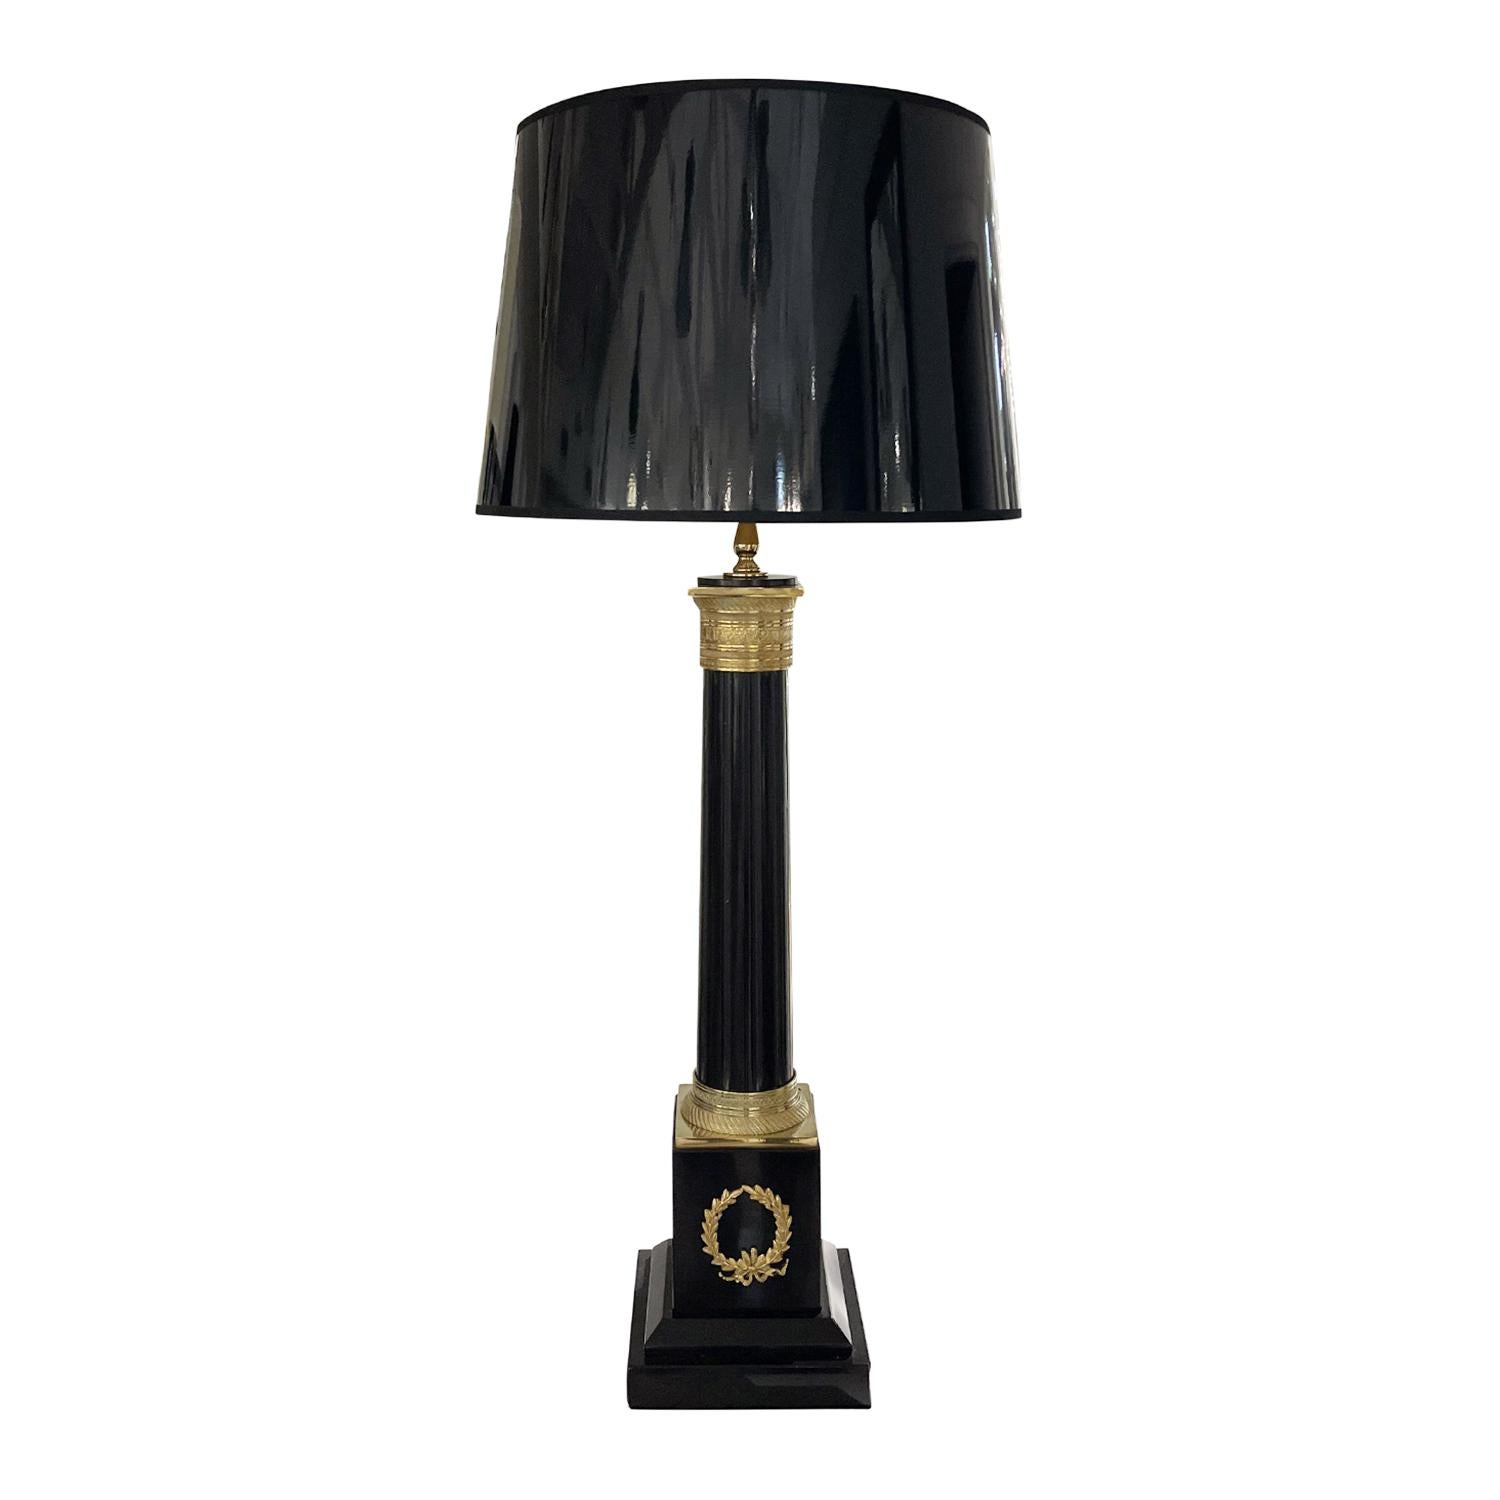 Ein schwarzes, französisches Paar großer Tischlampen aus handgefertigtem Marmor mit einem neuen runden Schirm, in gutem Zustand. Sie bestehen aus einem Originalschalter mit vergoldetem Bronzedekor und einer Steckdose für eine Lampe. Die Pariser